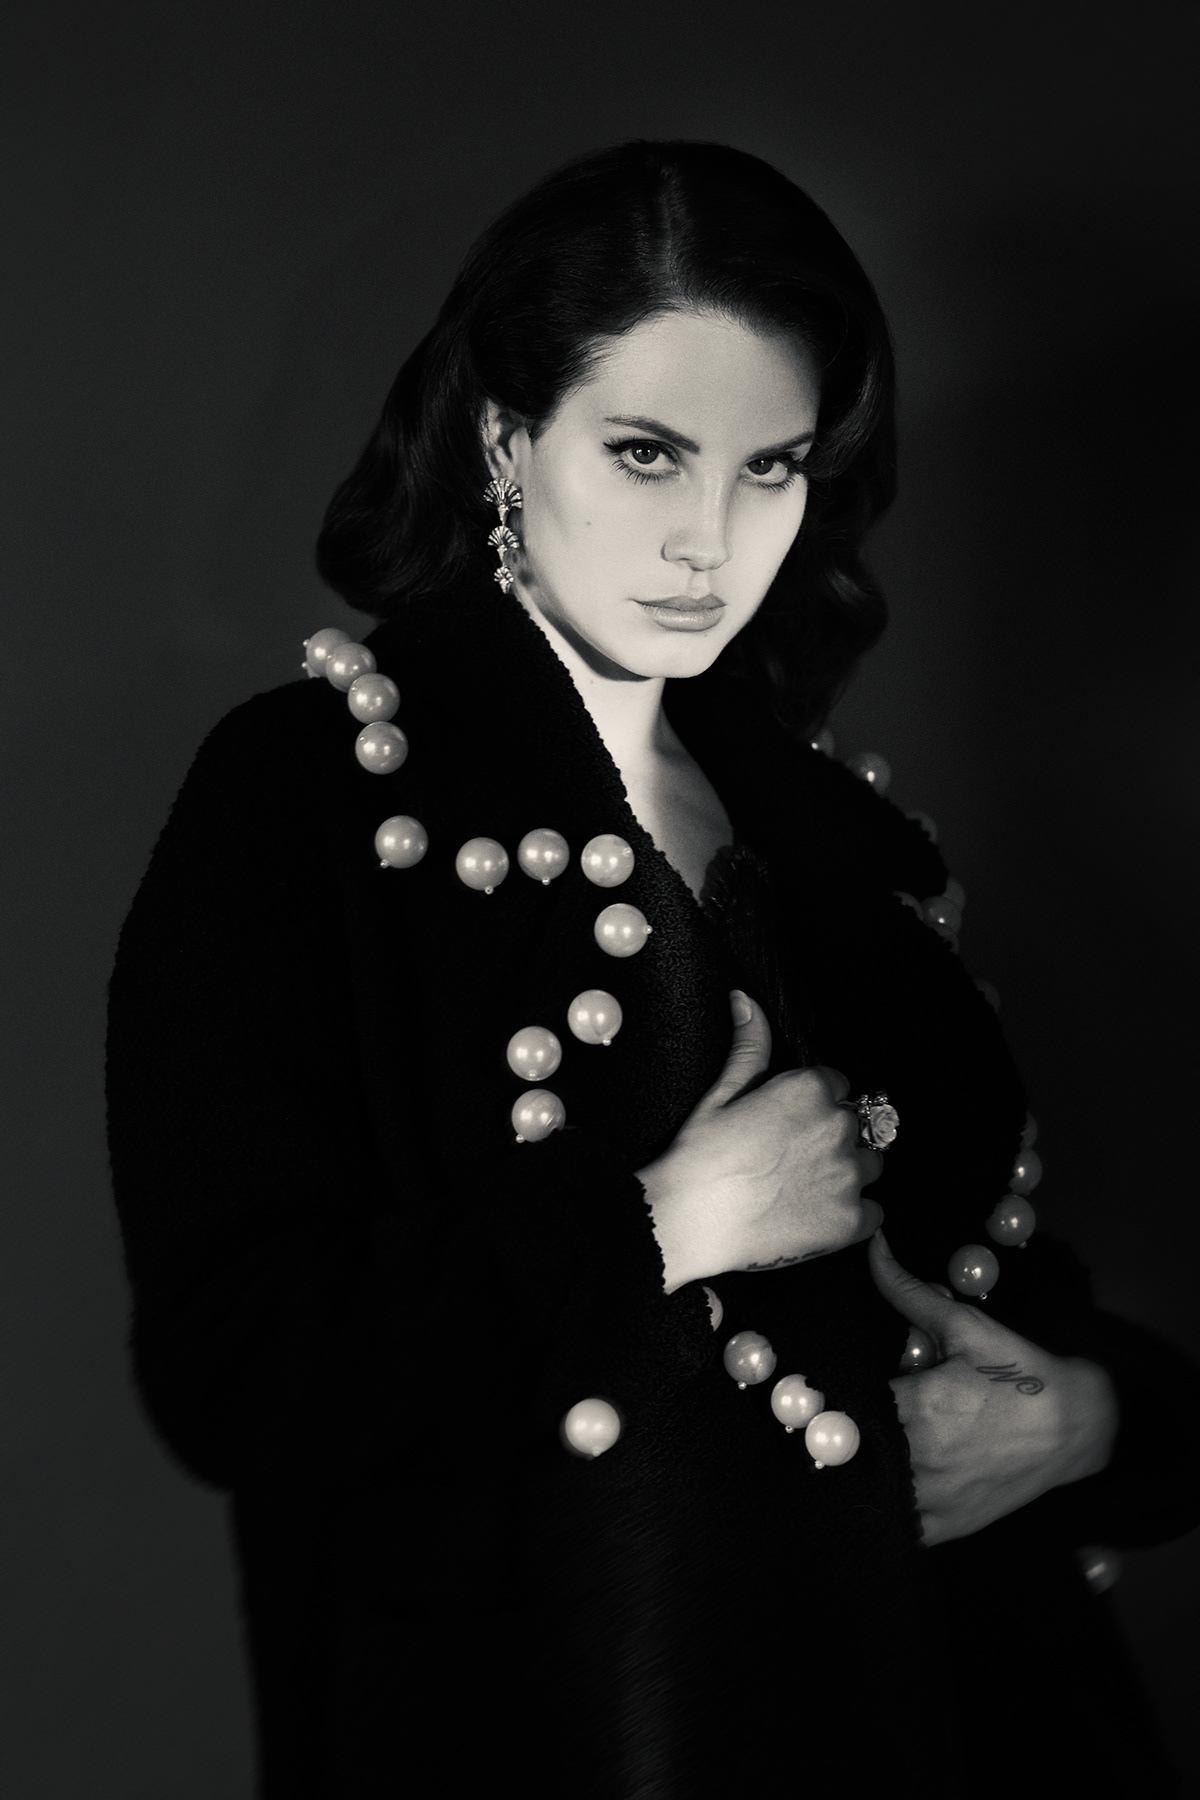 Complex Magazine Lana Del Rey Photography  magazine editorial music setta studio Tim Saccenti